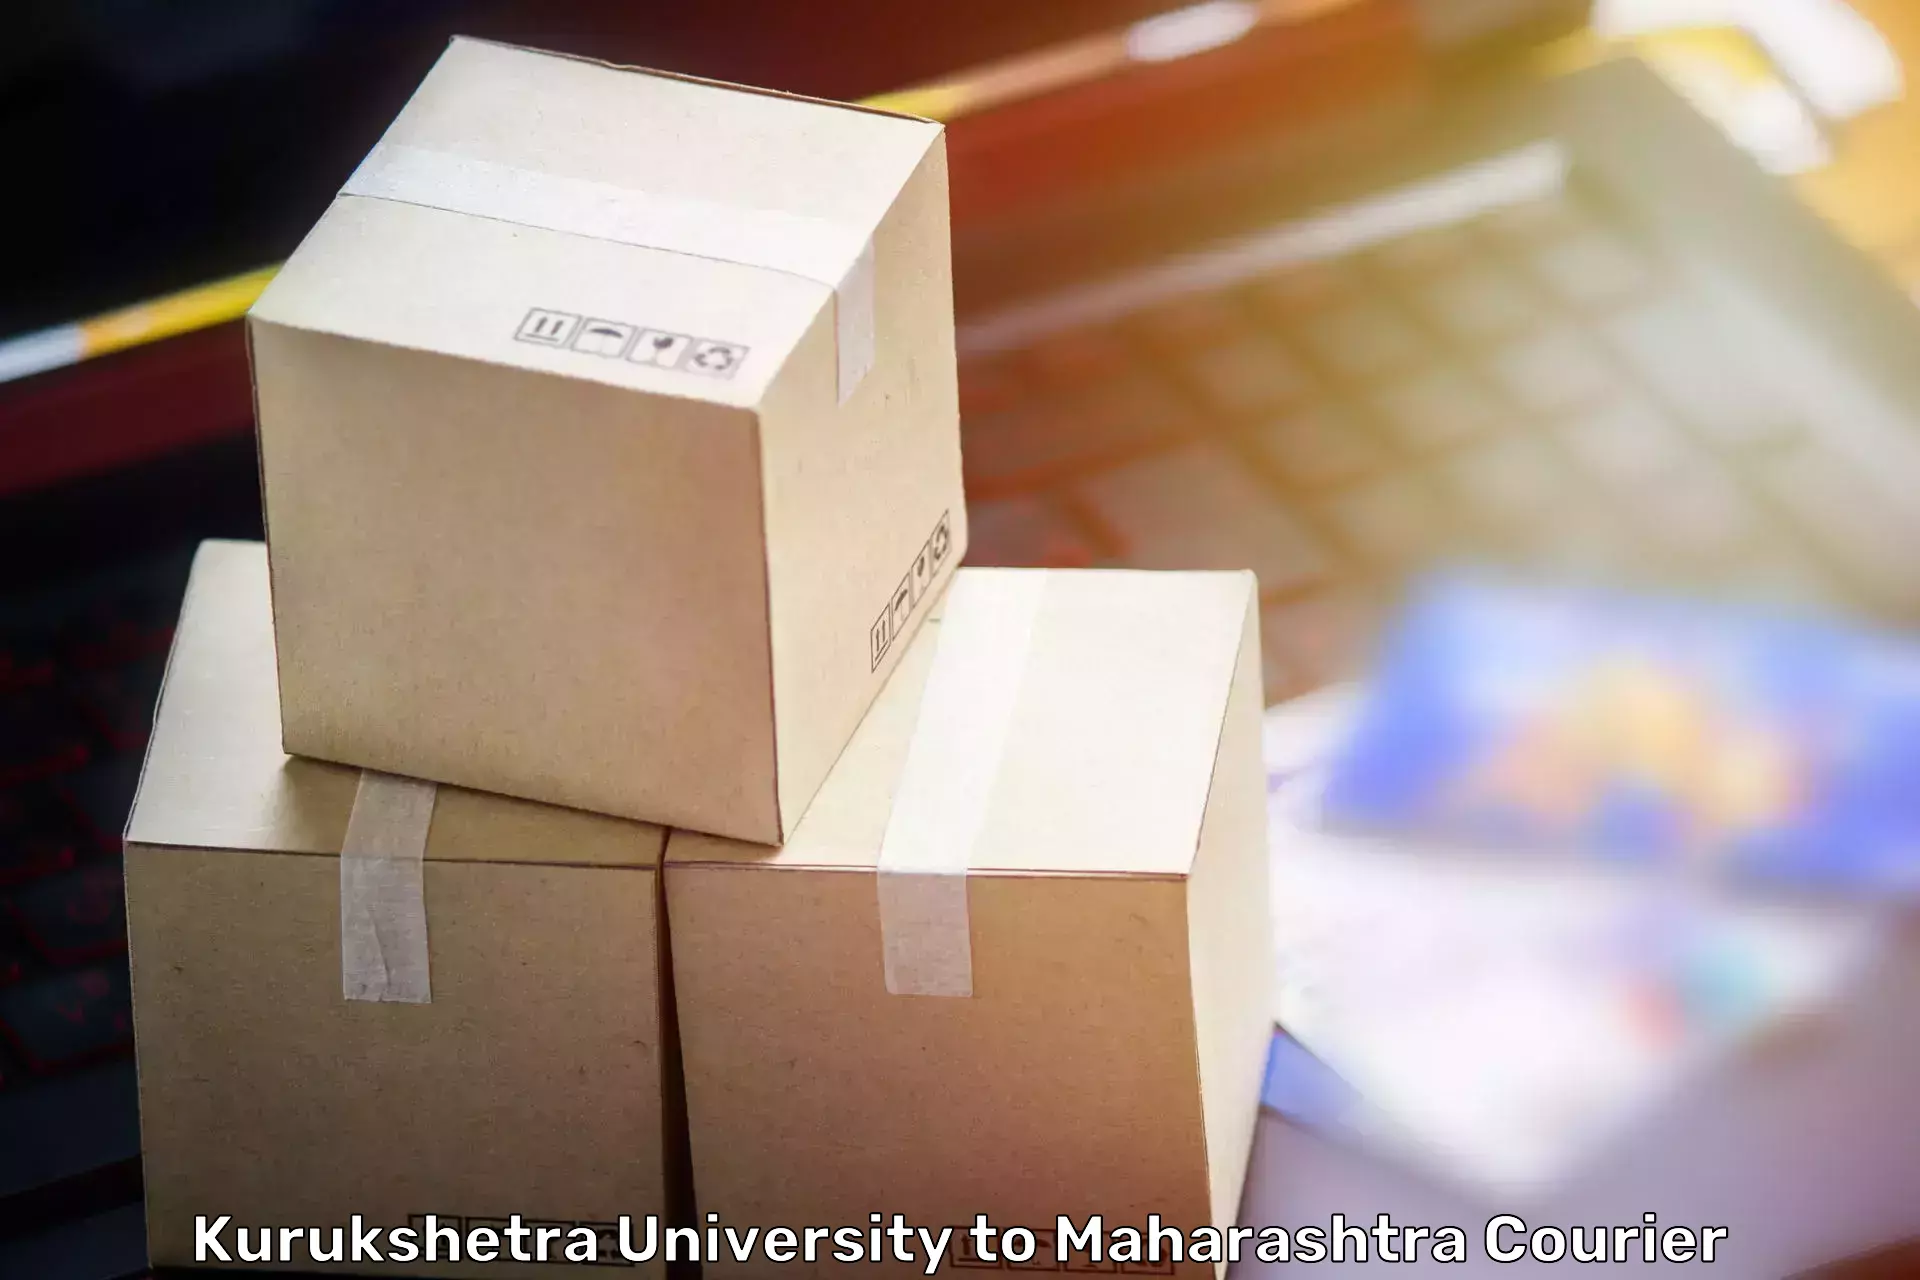 Home relocation solutions Kurukshetra University to IIT Mumbai